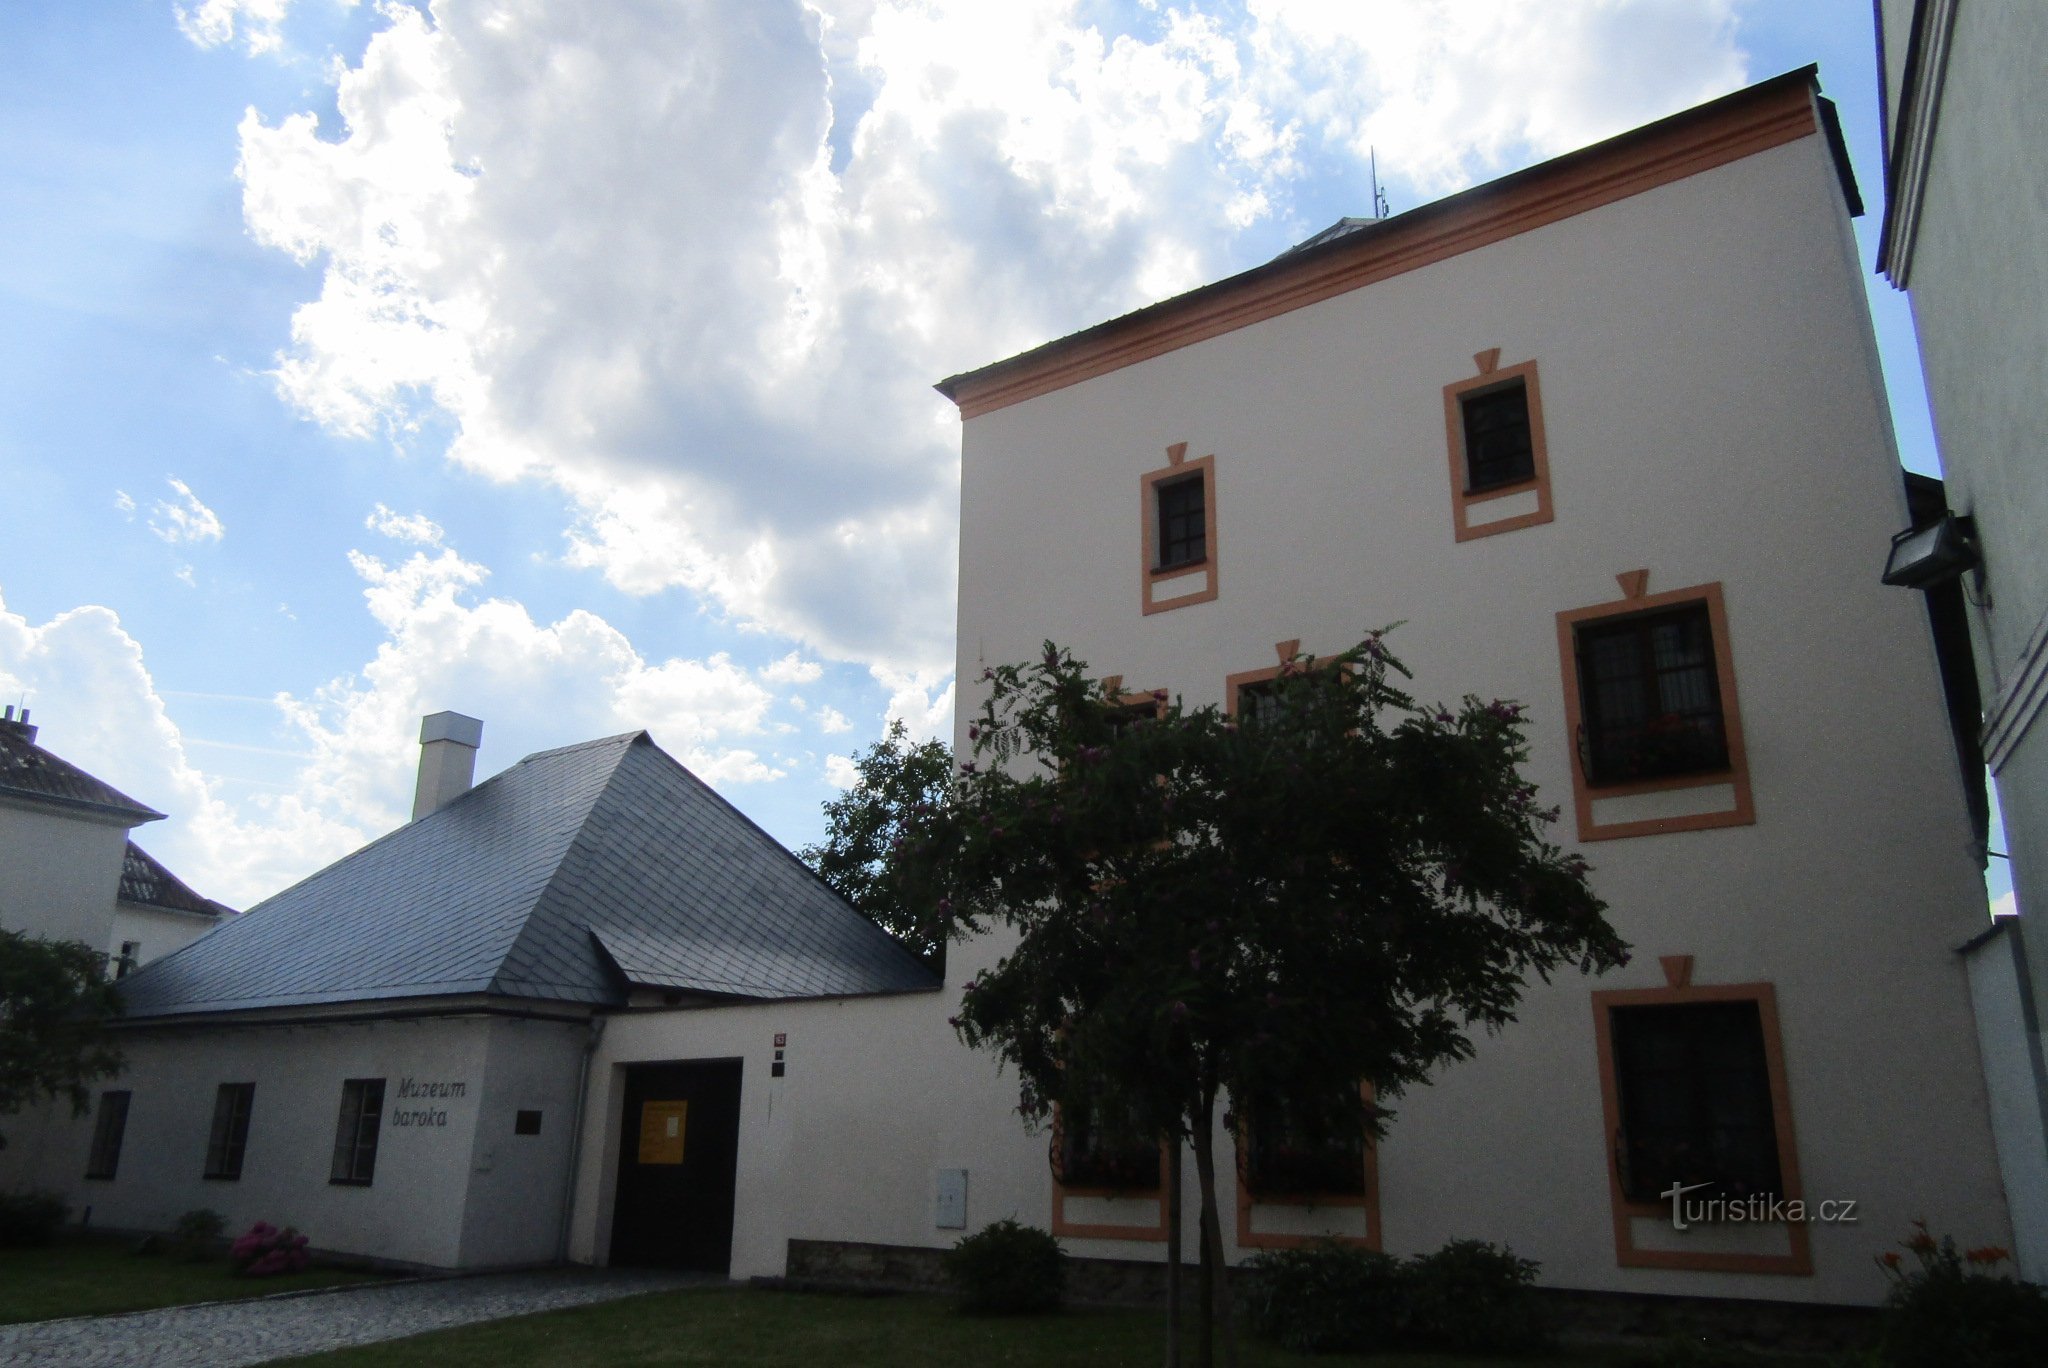 Στο μουσείο στο Uničov